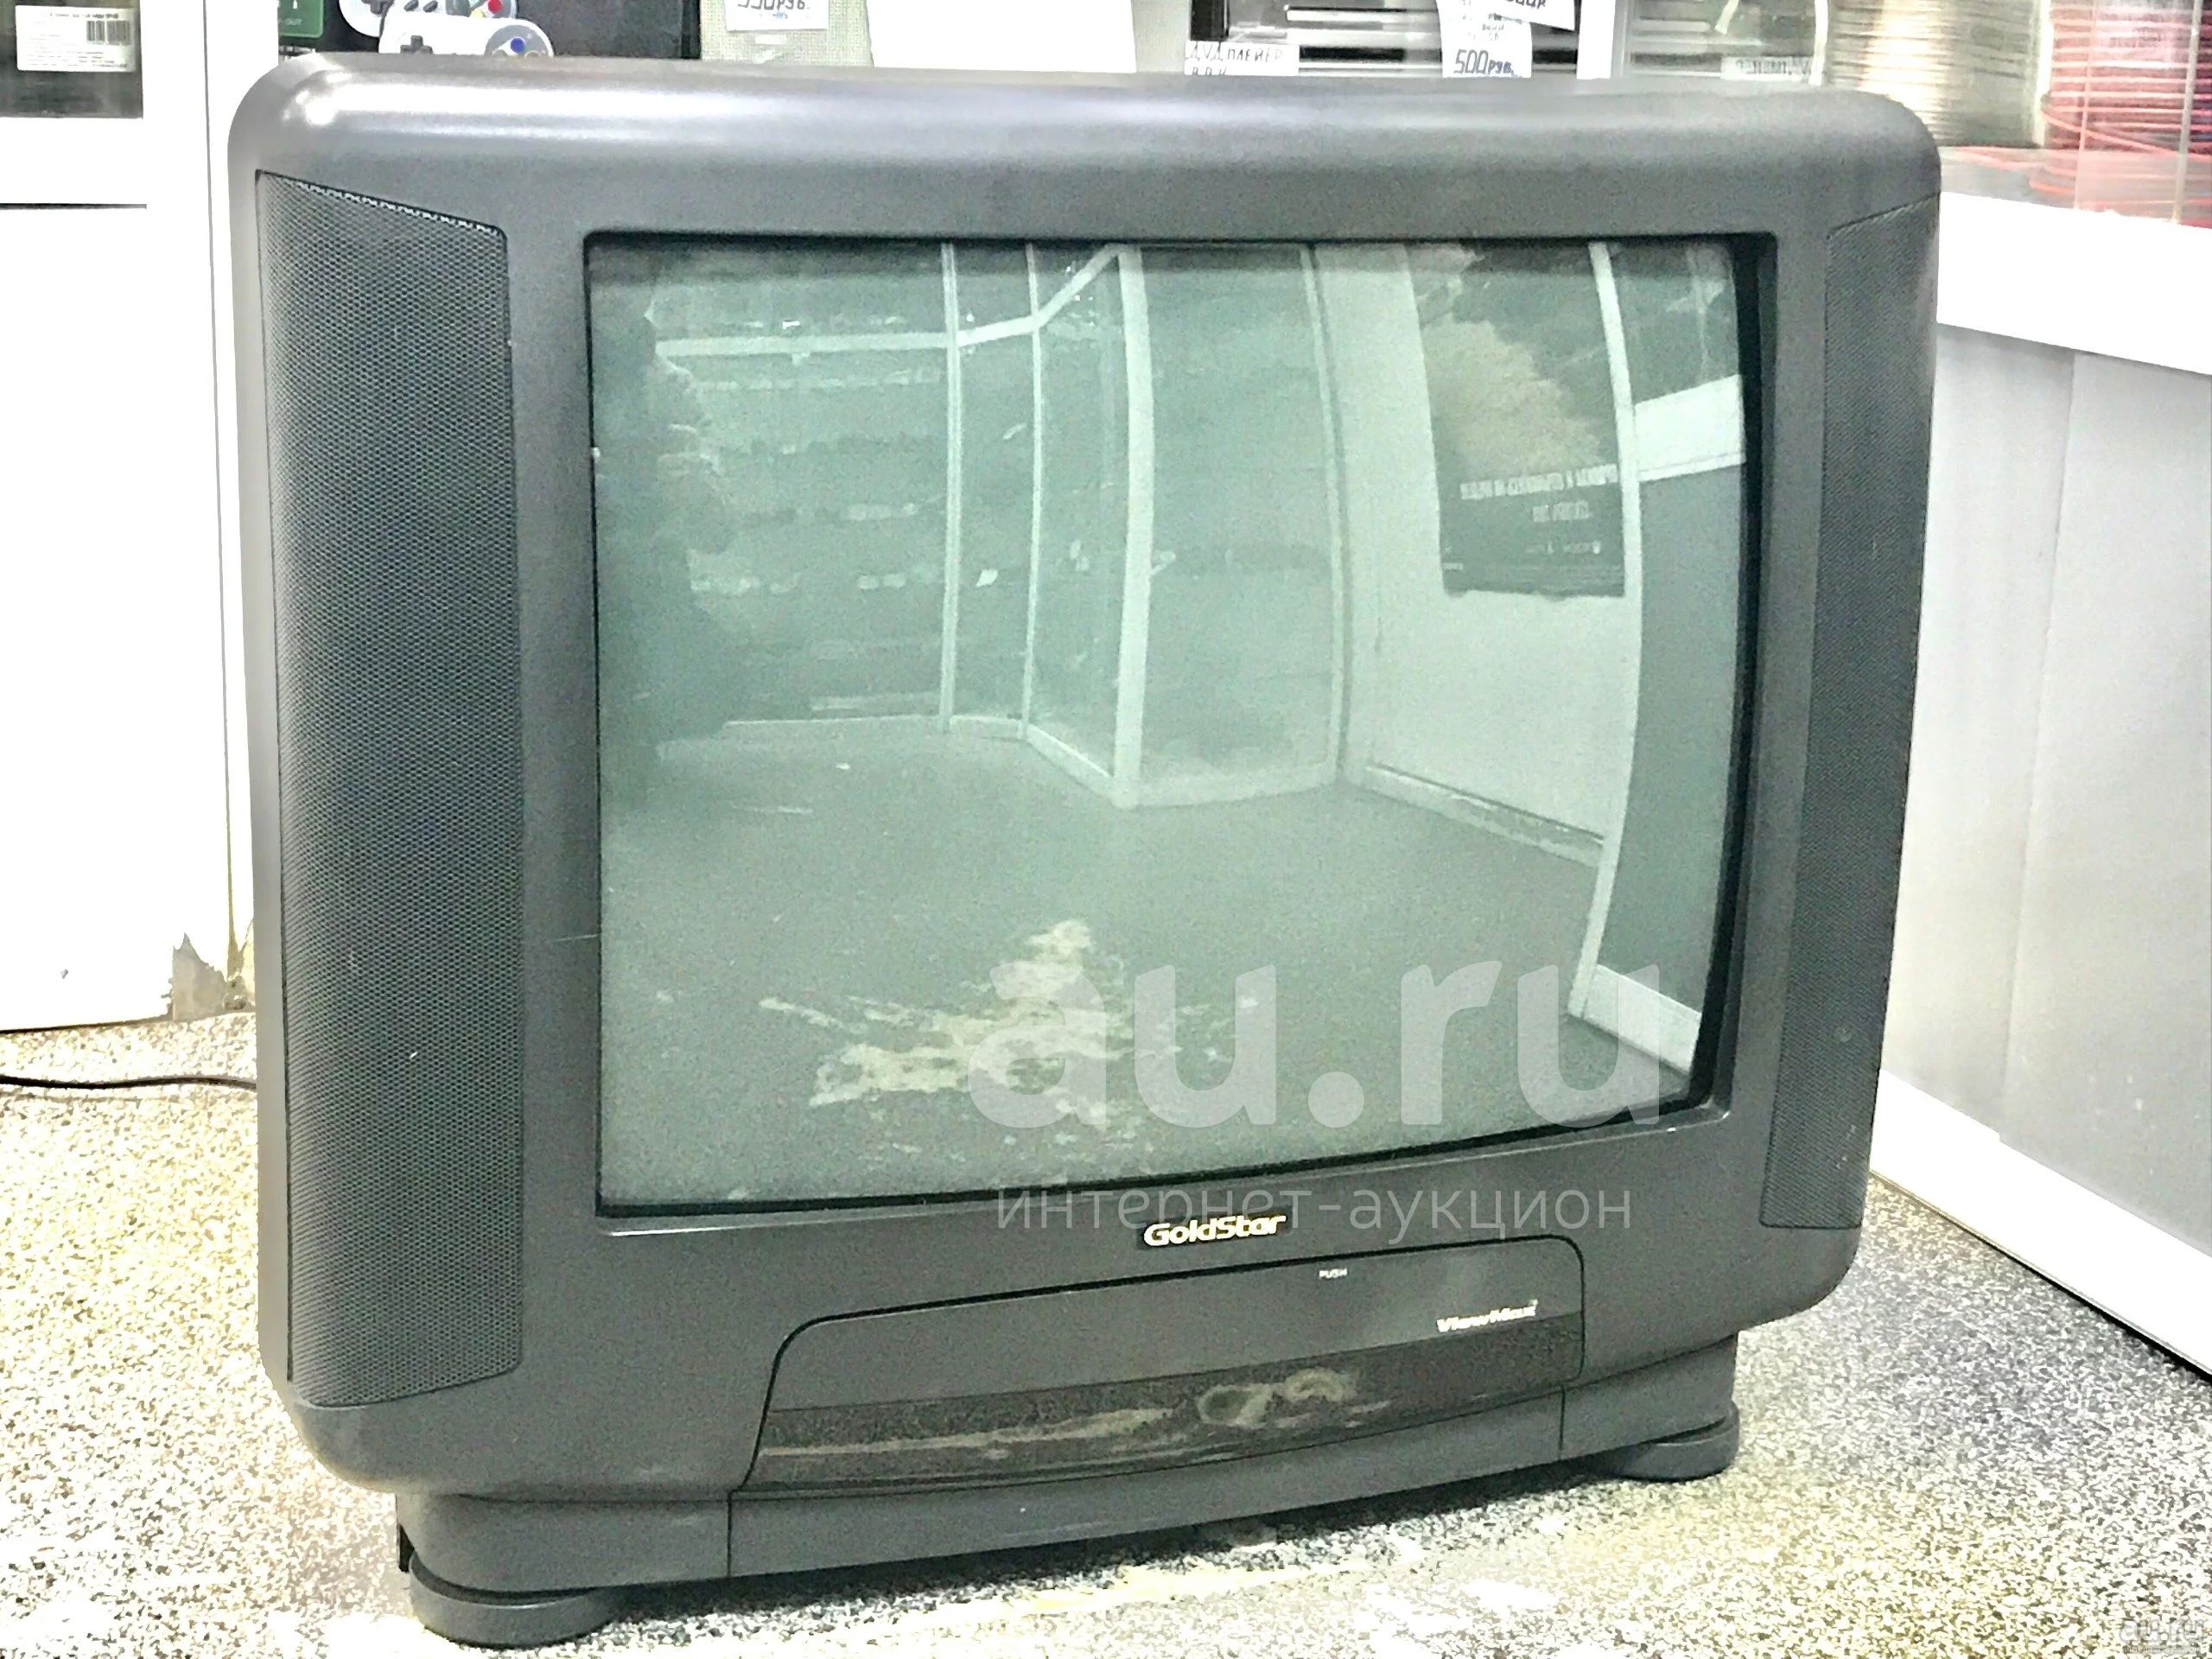 Авито красноярск телевизор